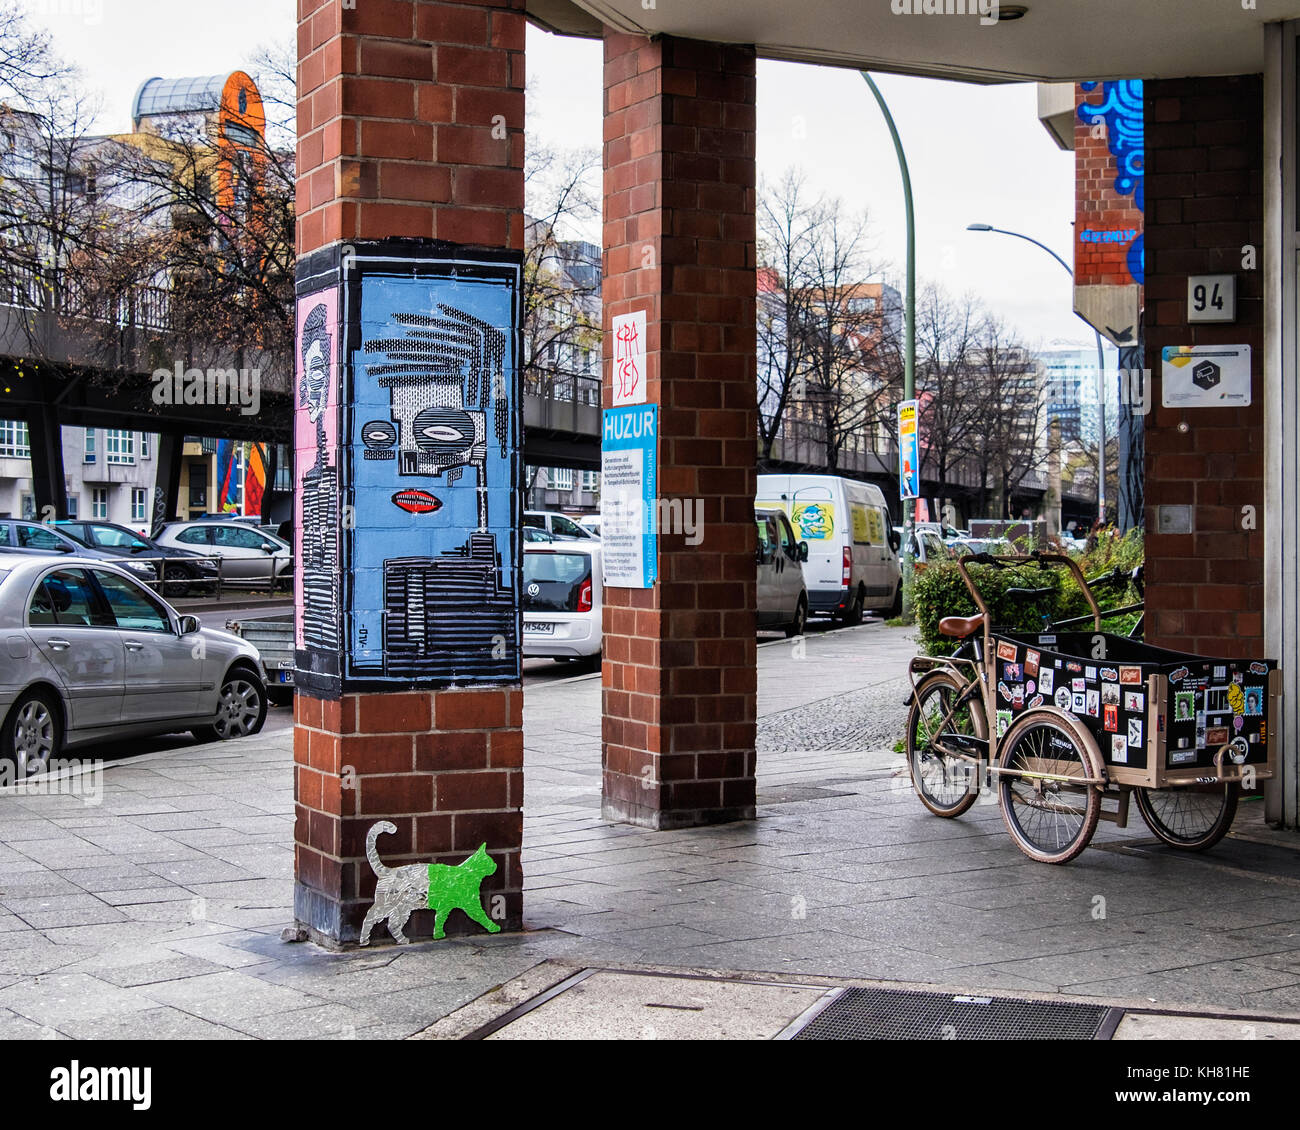 Berlin-Schönebergt.Huzur Neighborhood lieu de rencontre pour les personnes âgées.entrée colorée avec l'art de rue portrait abstrait par ALO,glass cat & tricycle Banque D'Images